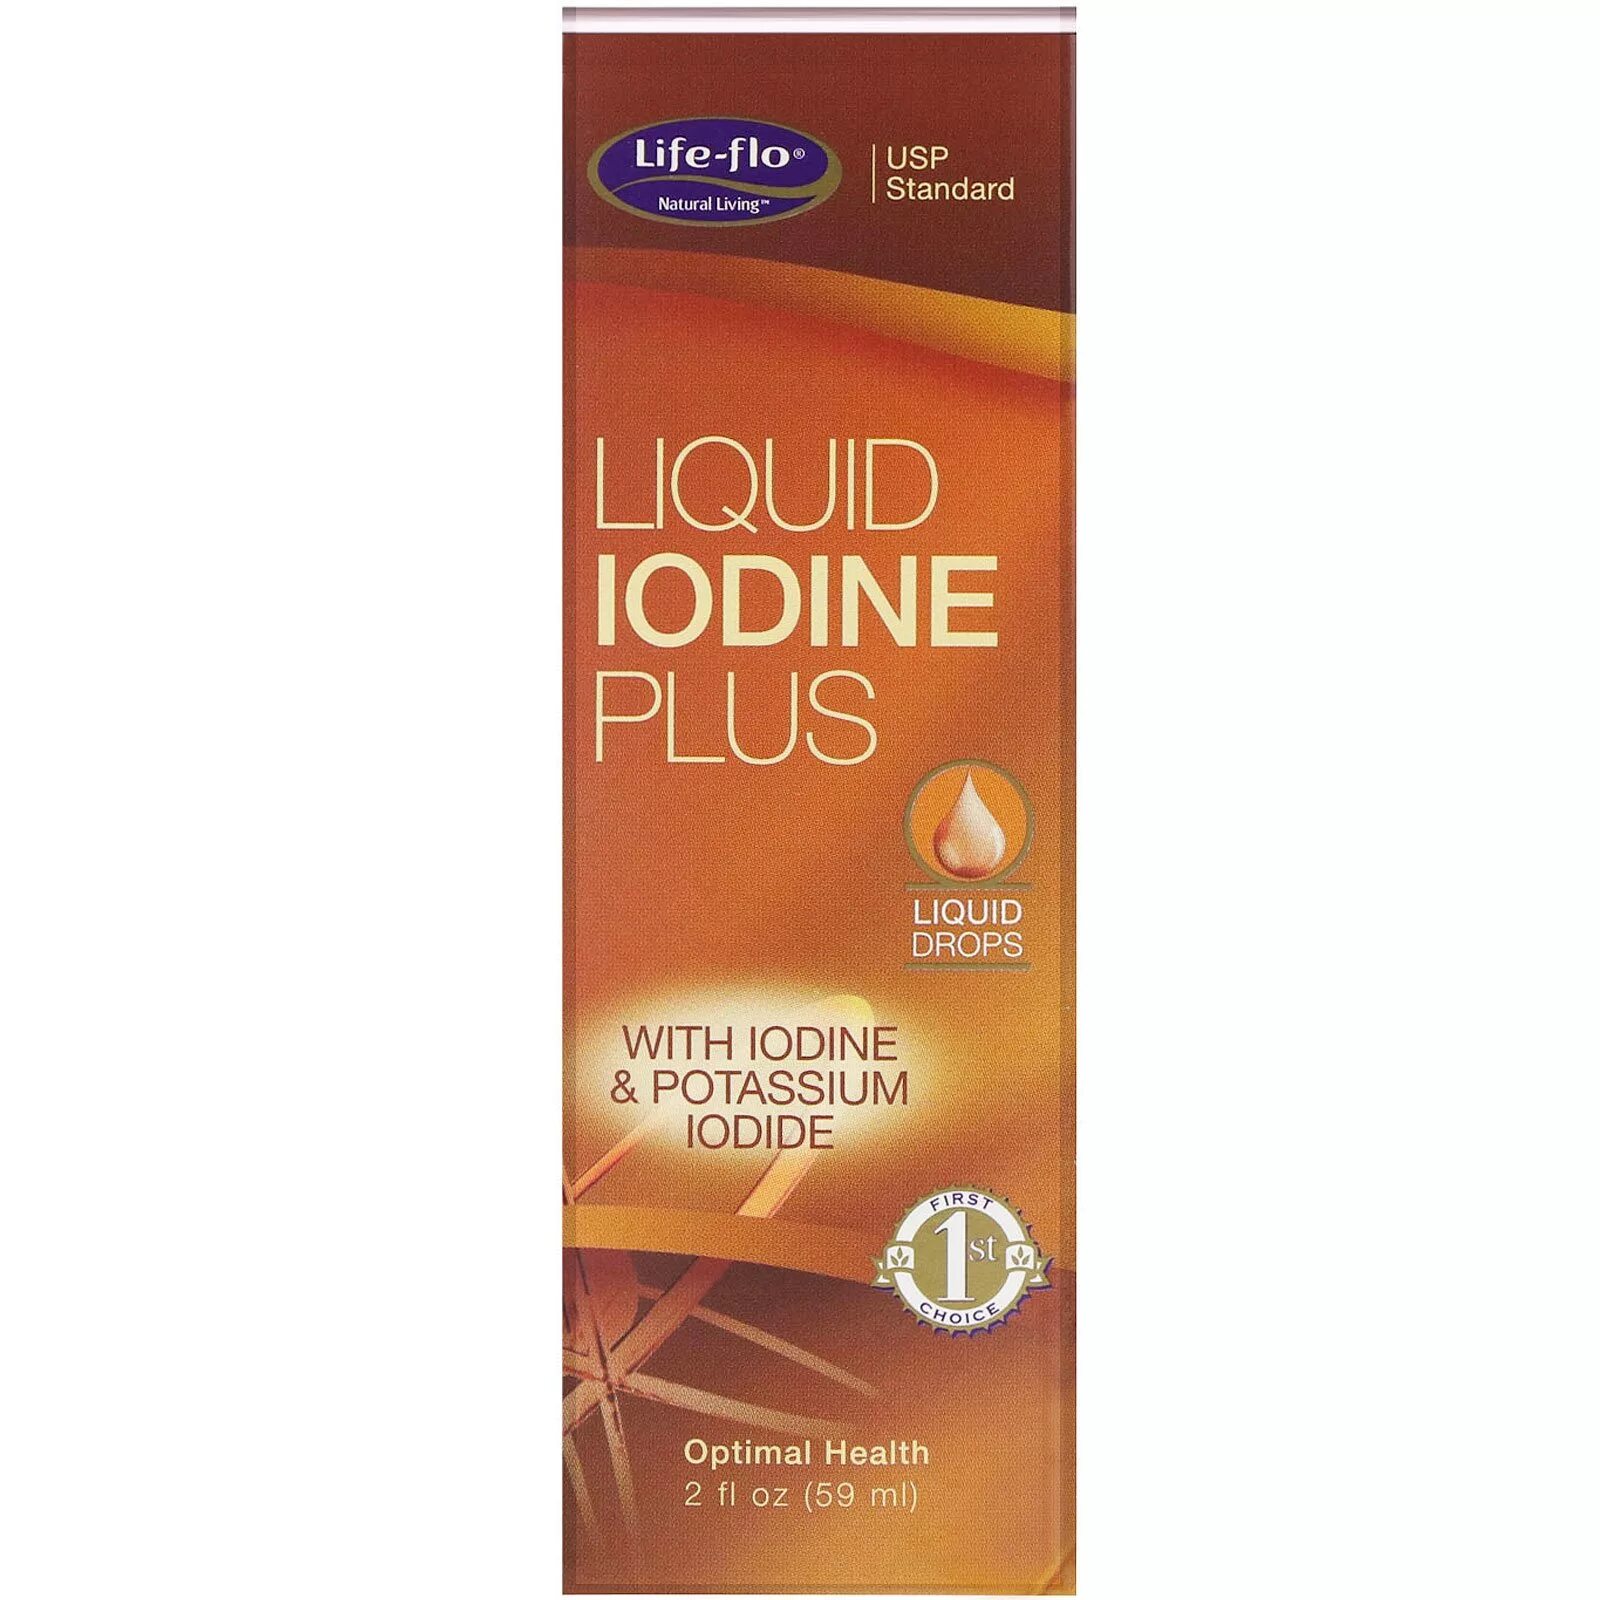 Йод flo. Life Flo Liquid Iodine. Life-Flo-Health-Liquid Iodine. Life Flo йод. Жидкий йод Life Flo.